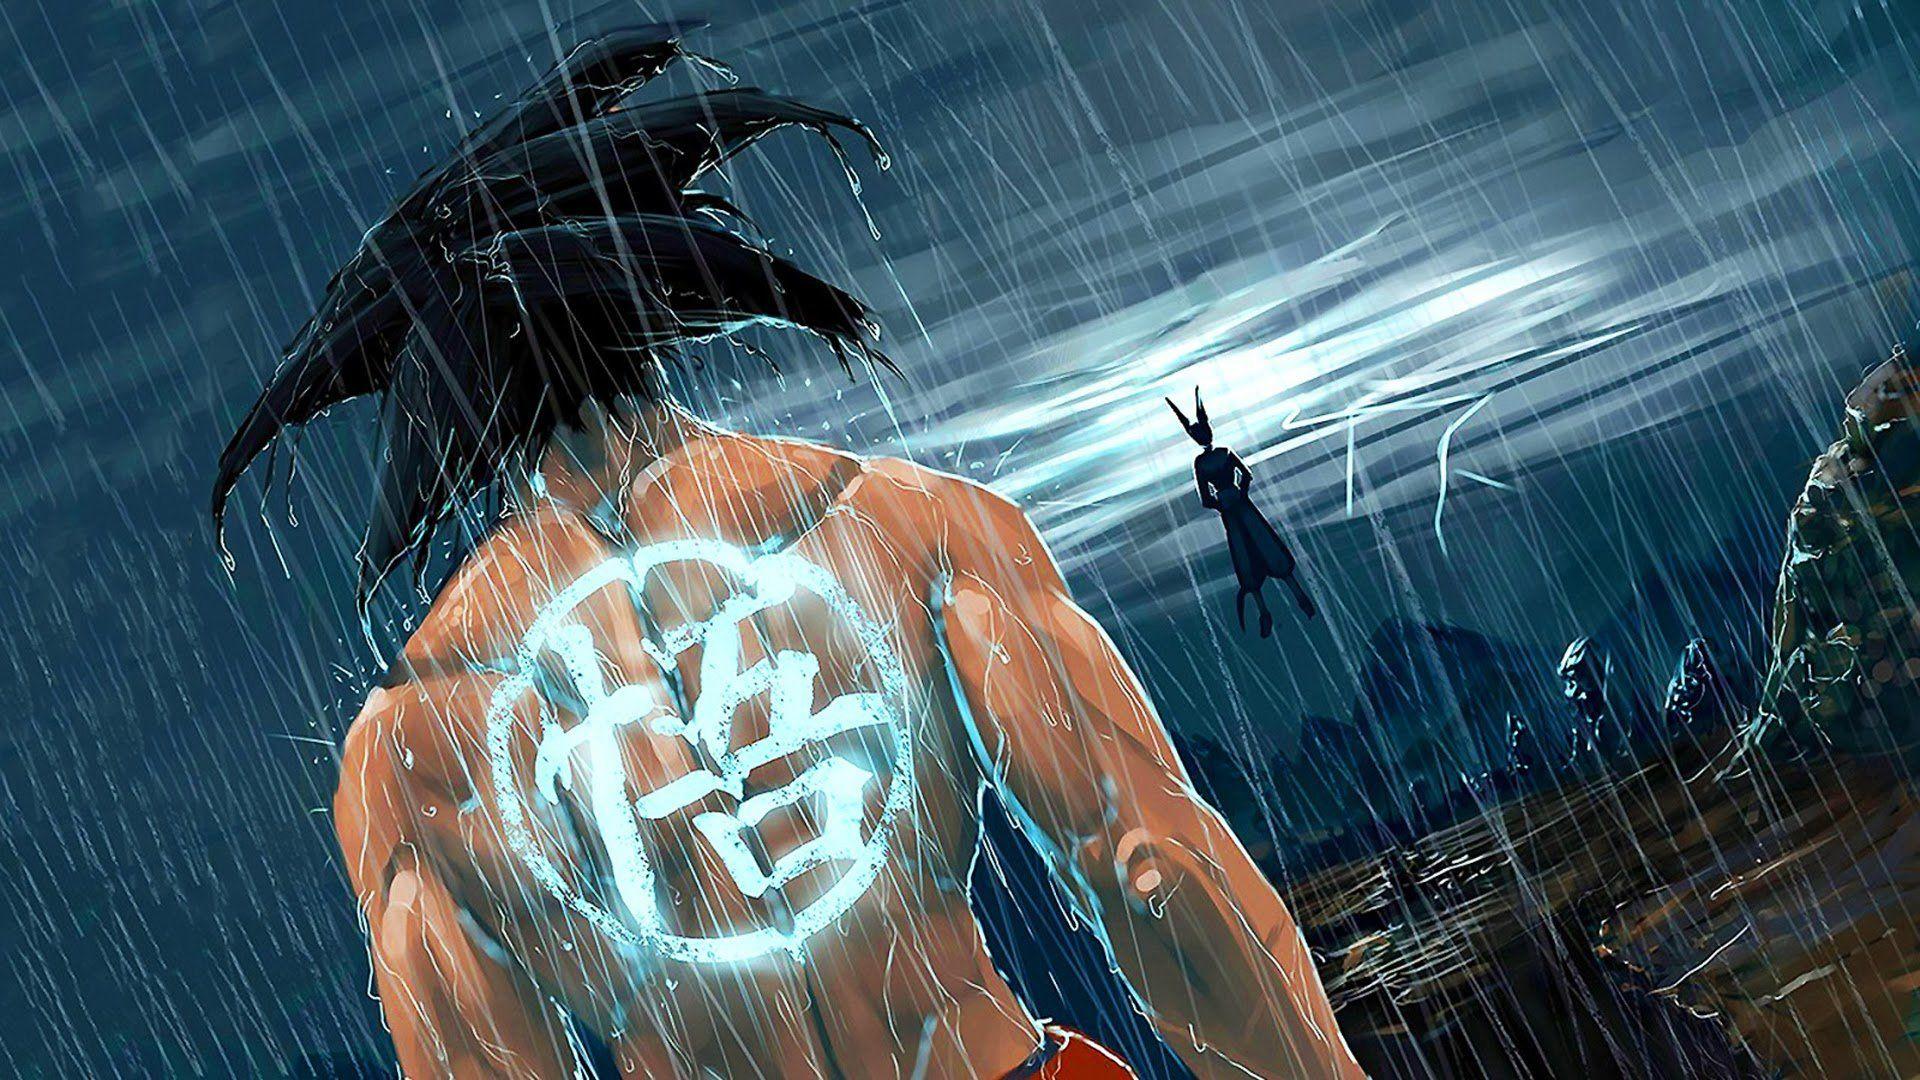 Dragon Ball Z Imagens Wallpaper Broly Super Homem Darkseid Doomsday